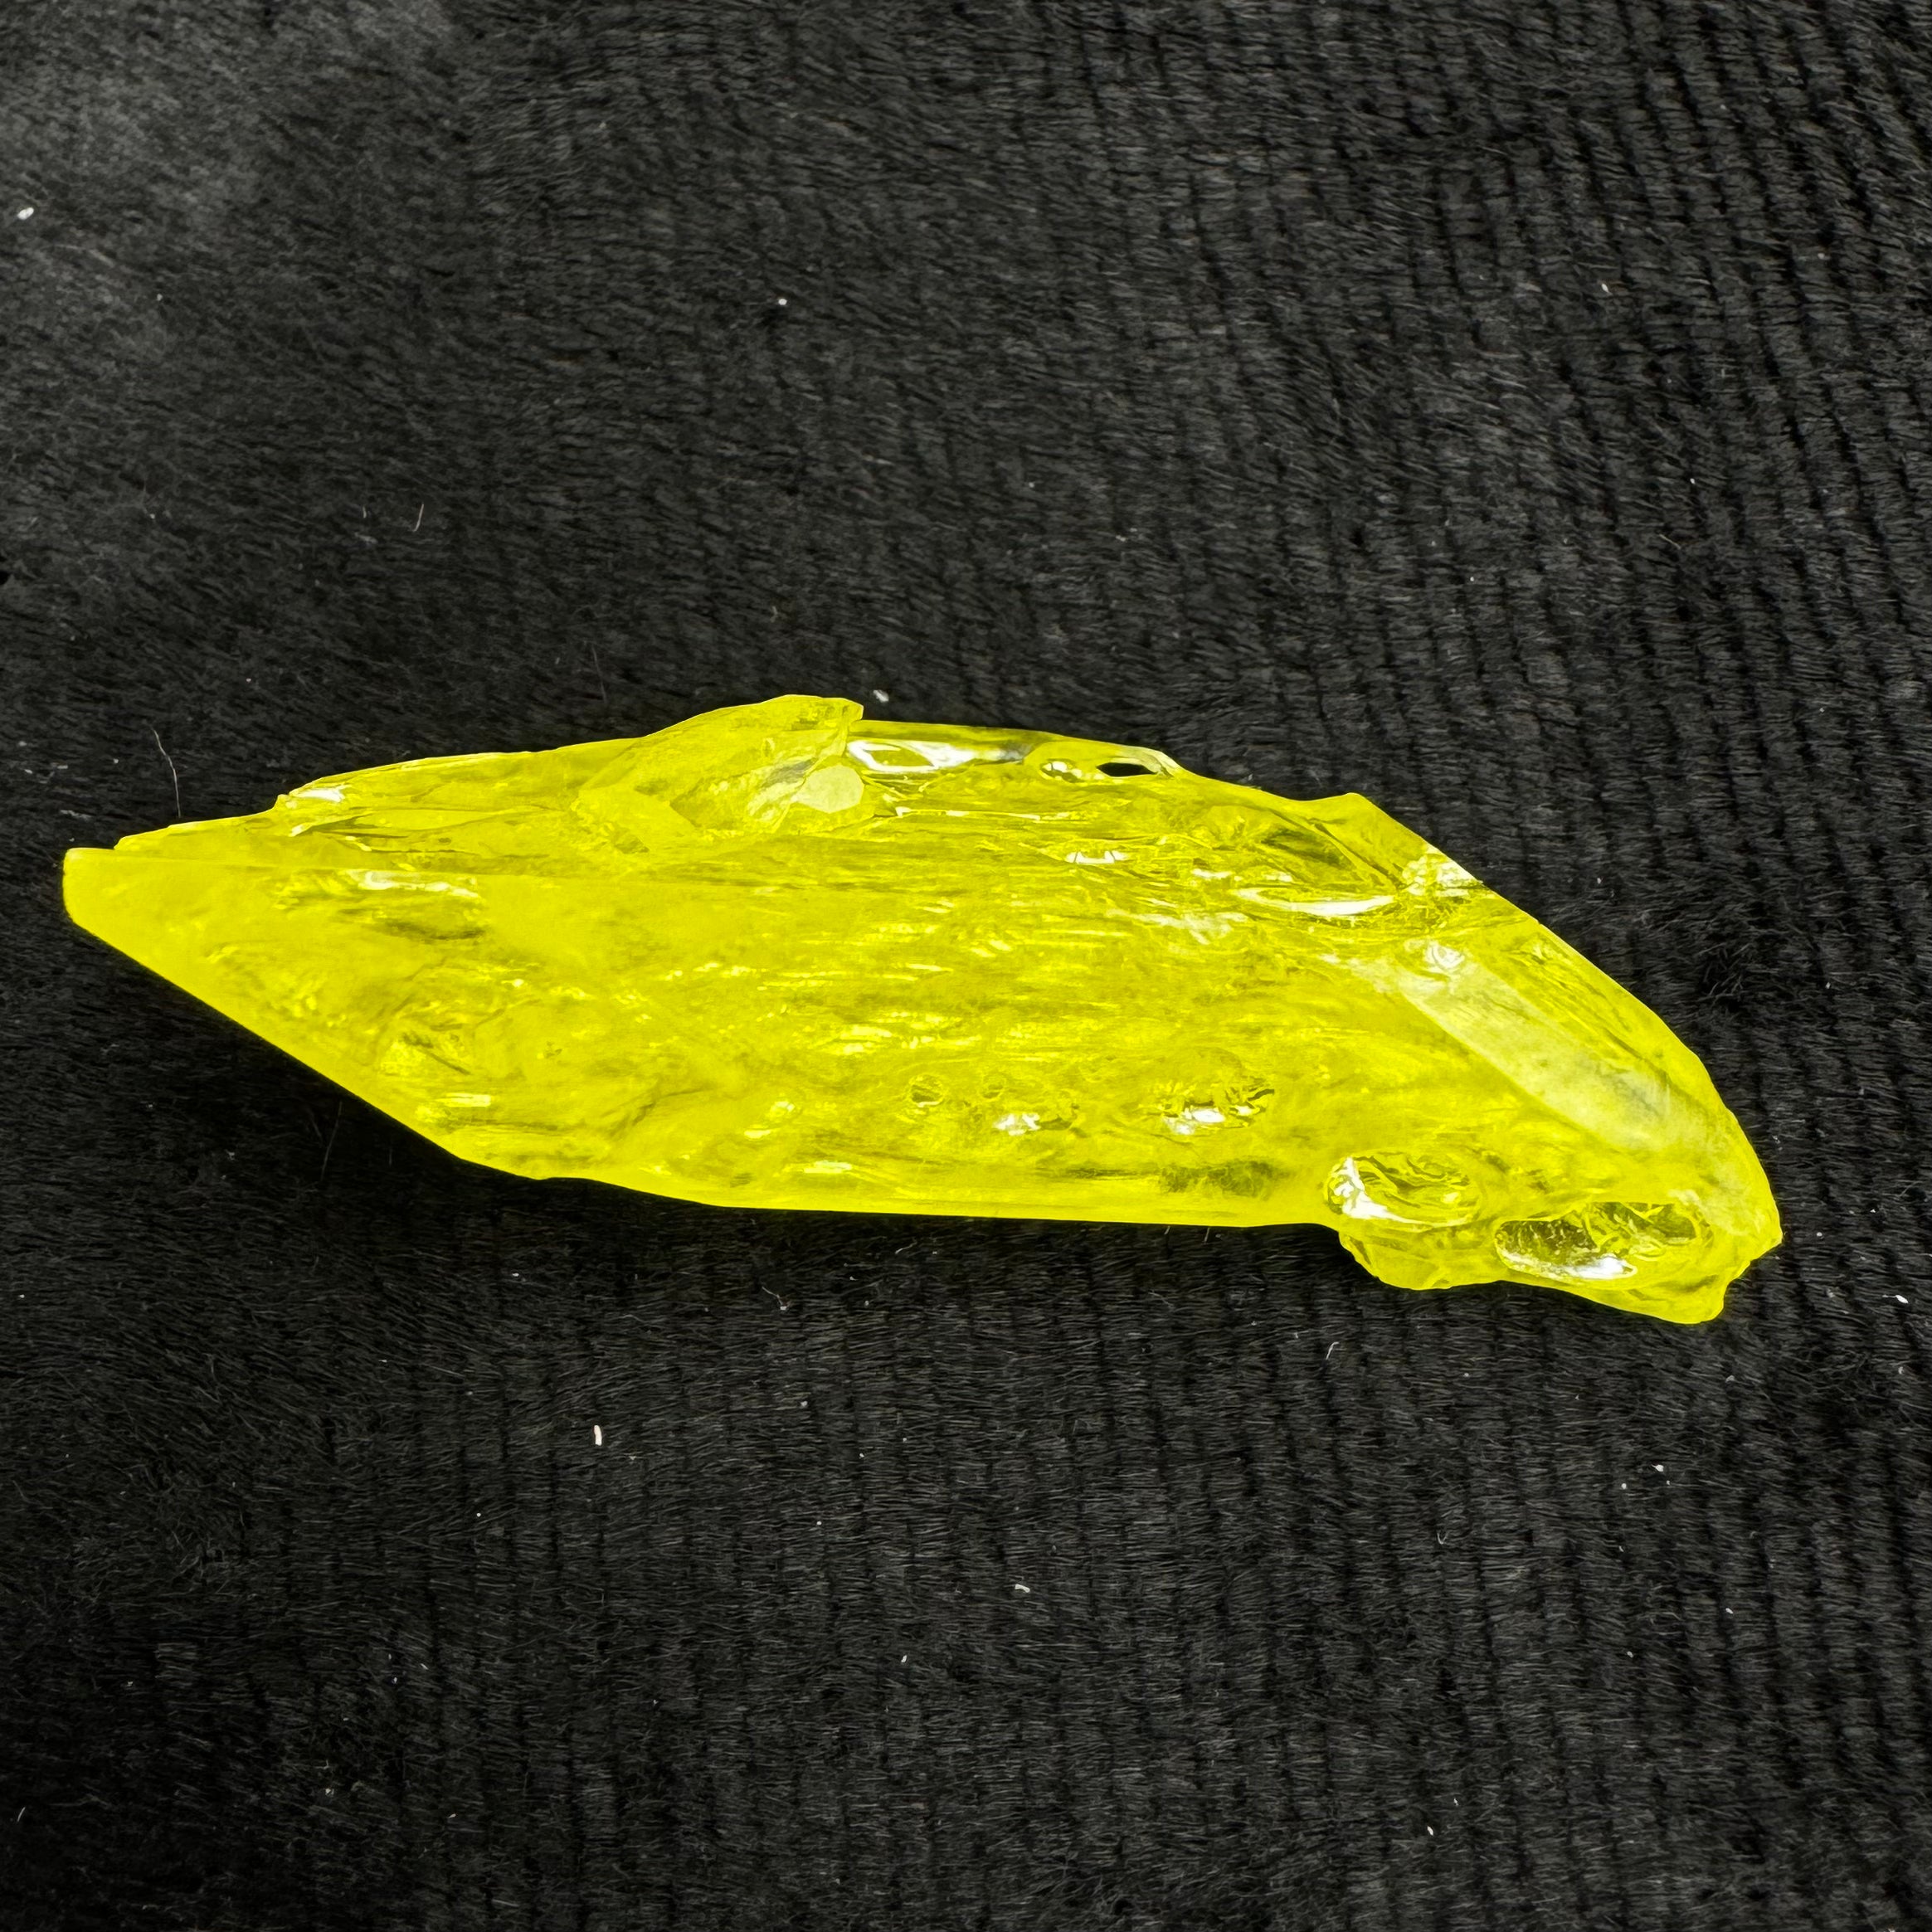 Sulfur Whole Crystal - 142